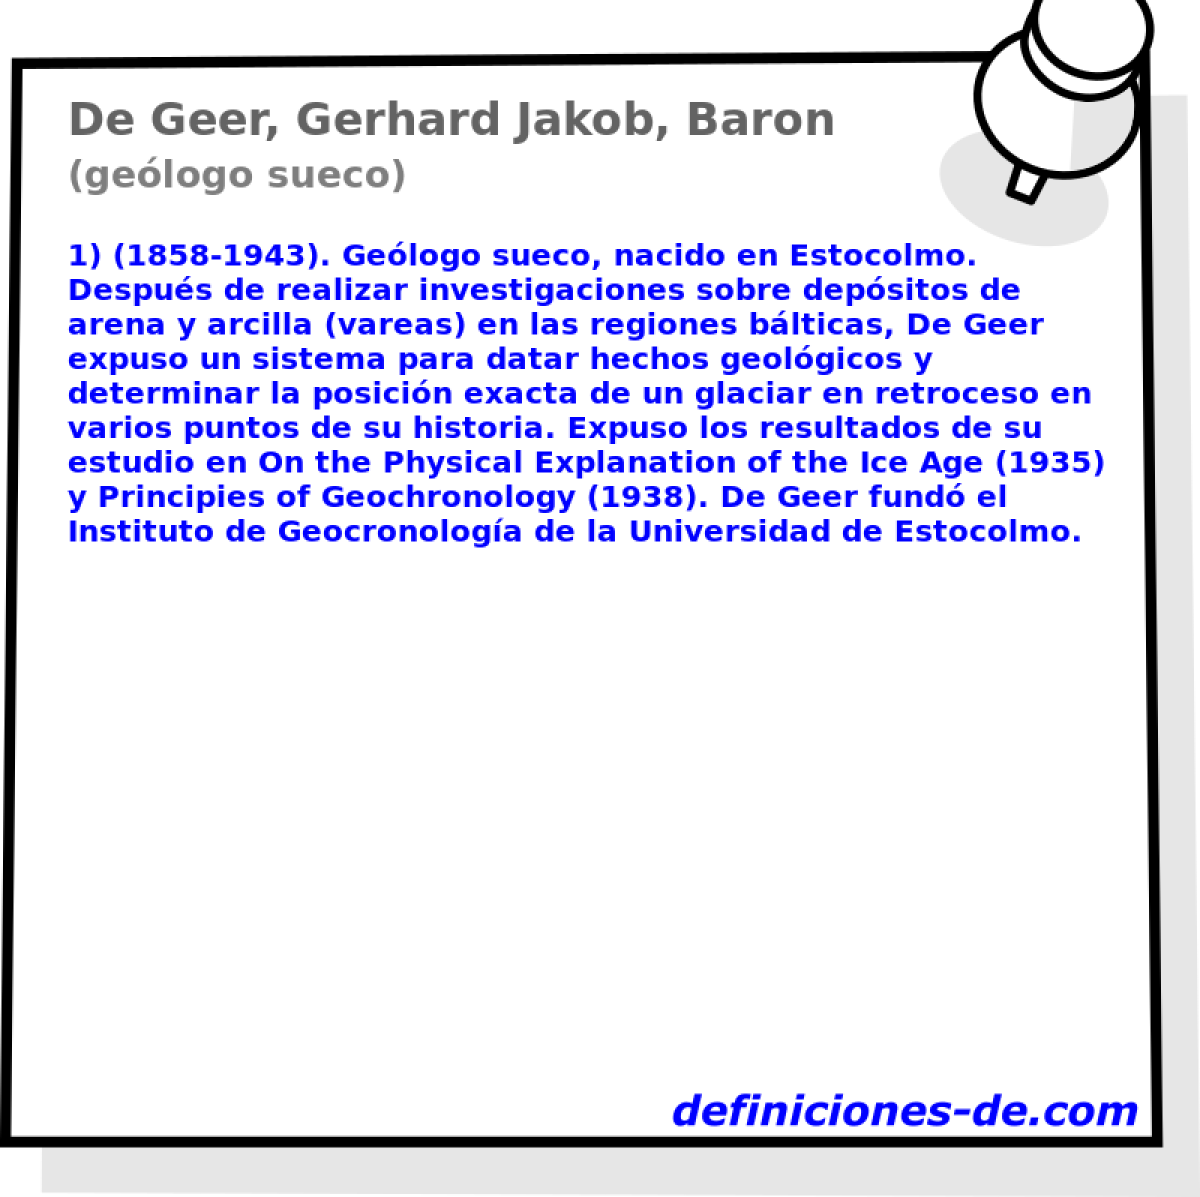 De Geer, Gerhard Jakob, Baron (gelogo sueco)